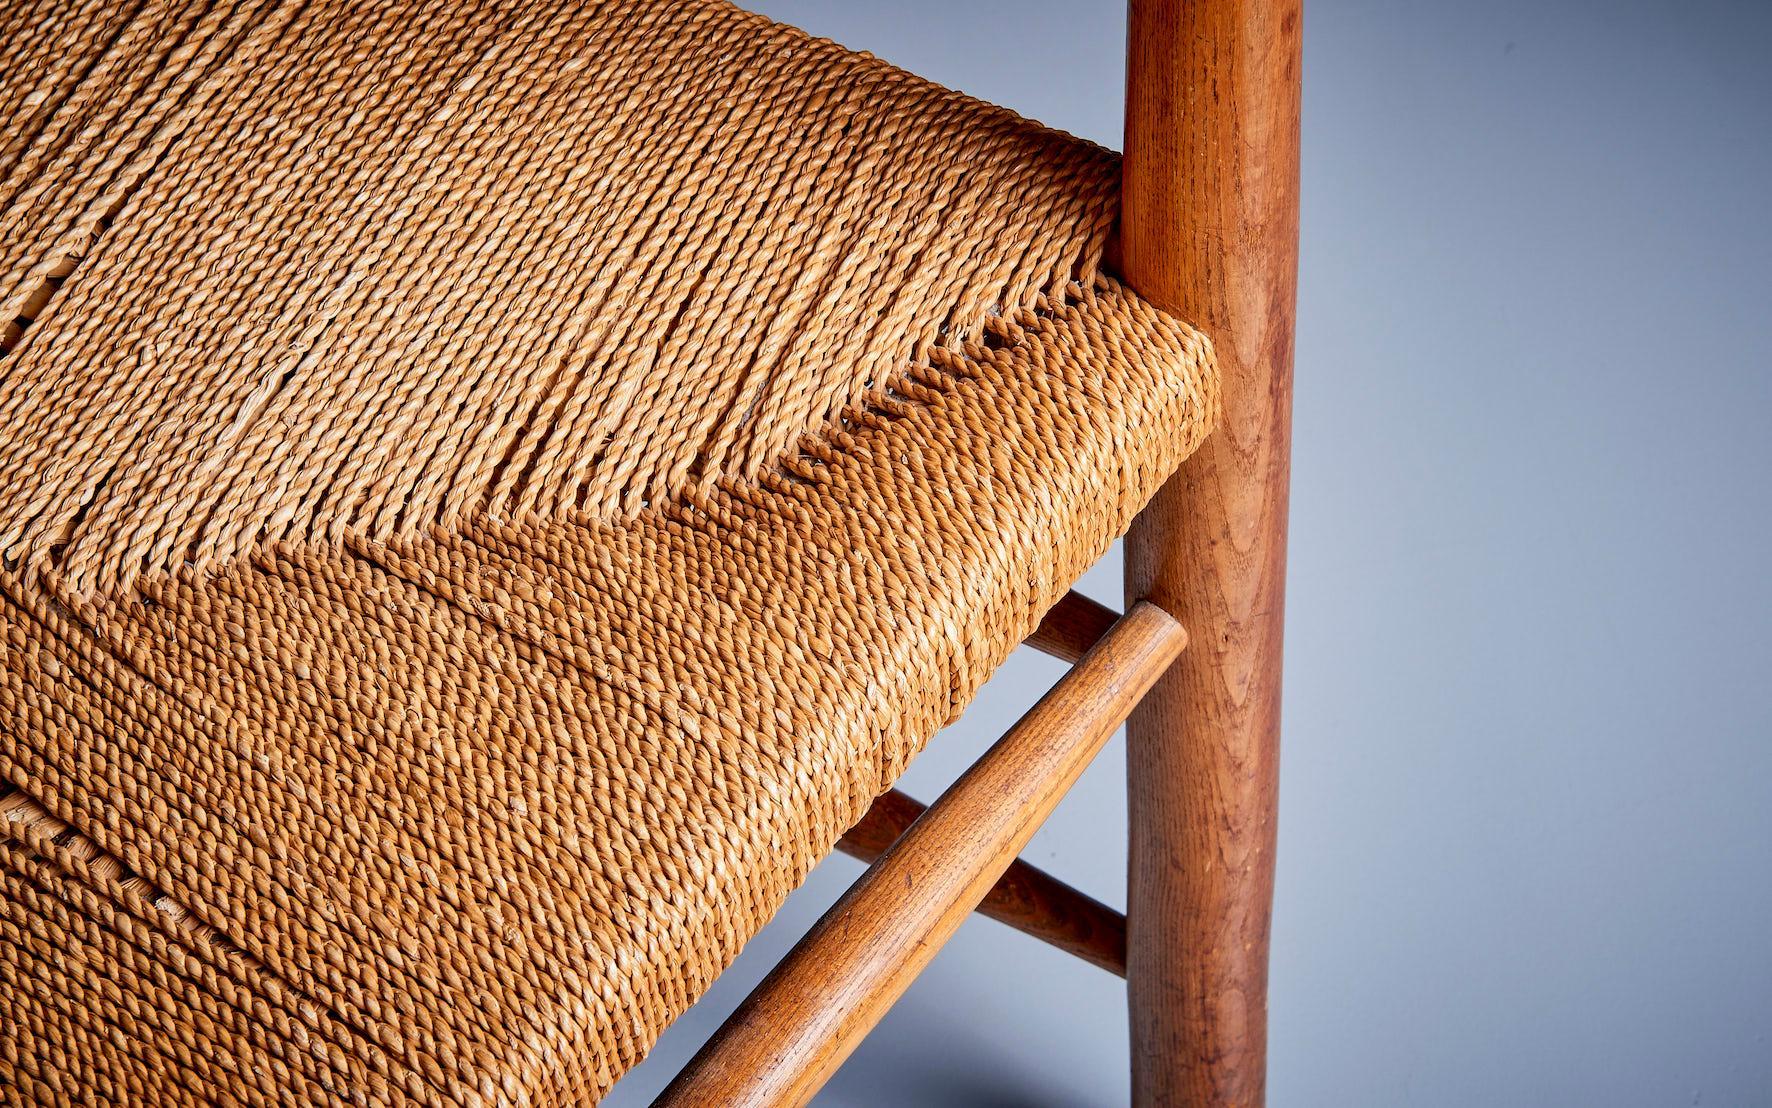 Sessel aus Esche und Papierkordel, Dänemark 1940er Jahre 
Die Details an diesem Stuhl sind etwas ganz Besonderes. Bitte sehen Sie sich die runde Rückenlehne an. So gut gemacht. Der Zustand ist für eine solche unrestaurierte Schönheit als